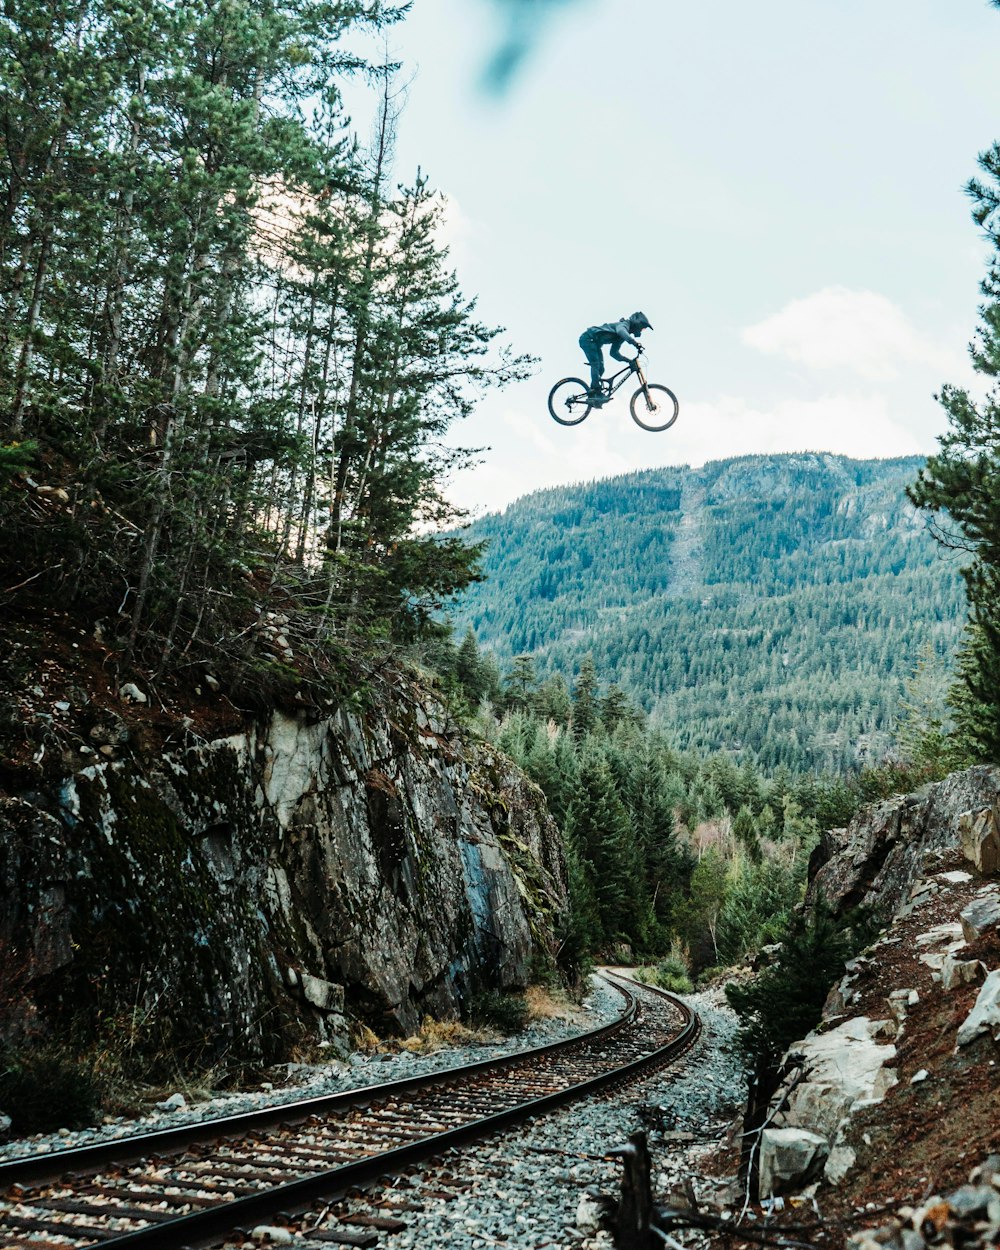 a man flying through the air while riding a bike